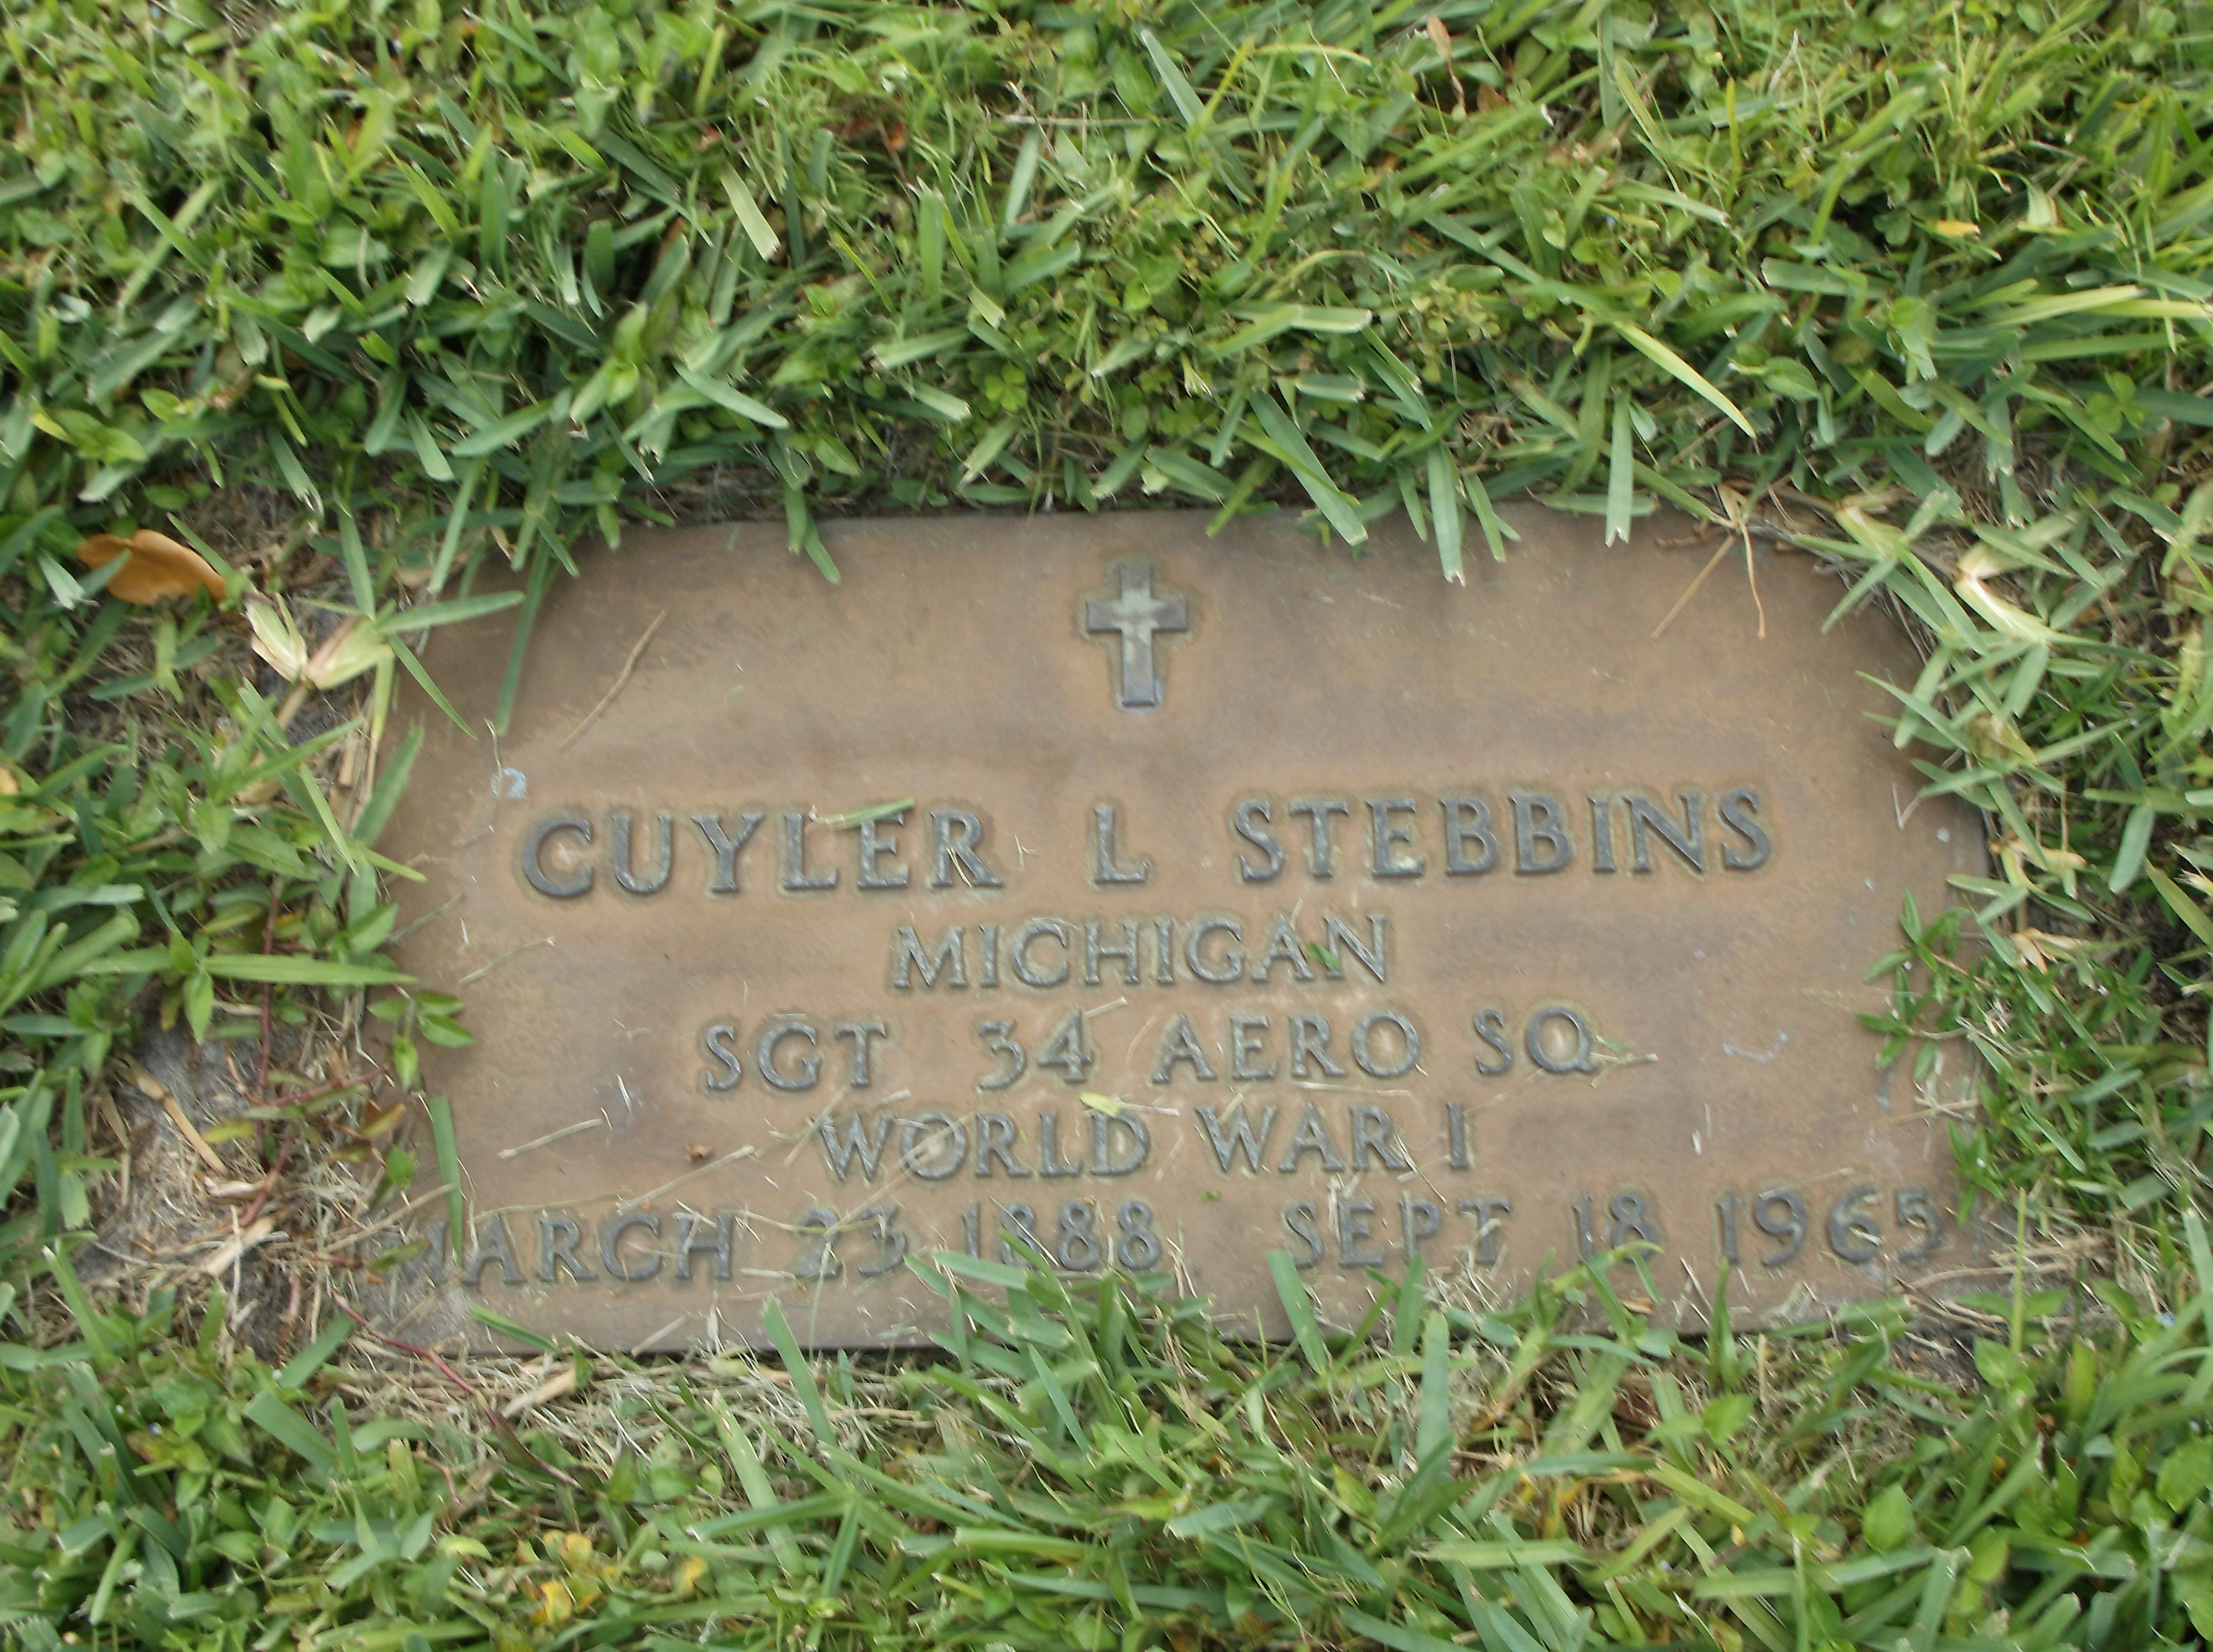 Cuyler L Stebbins